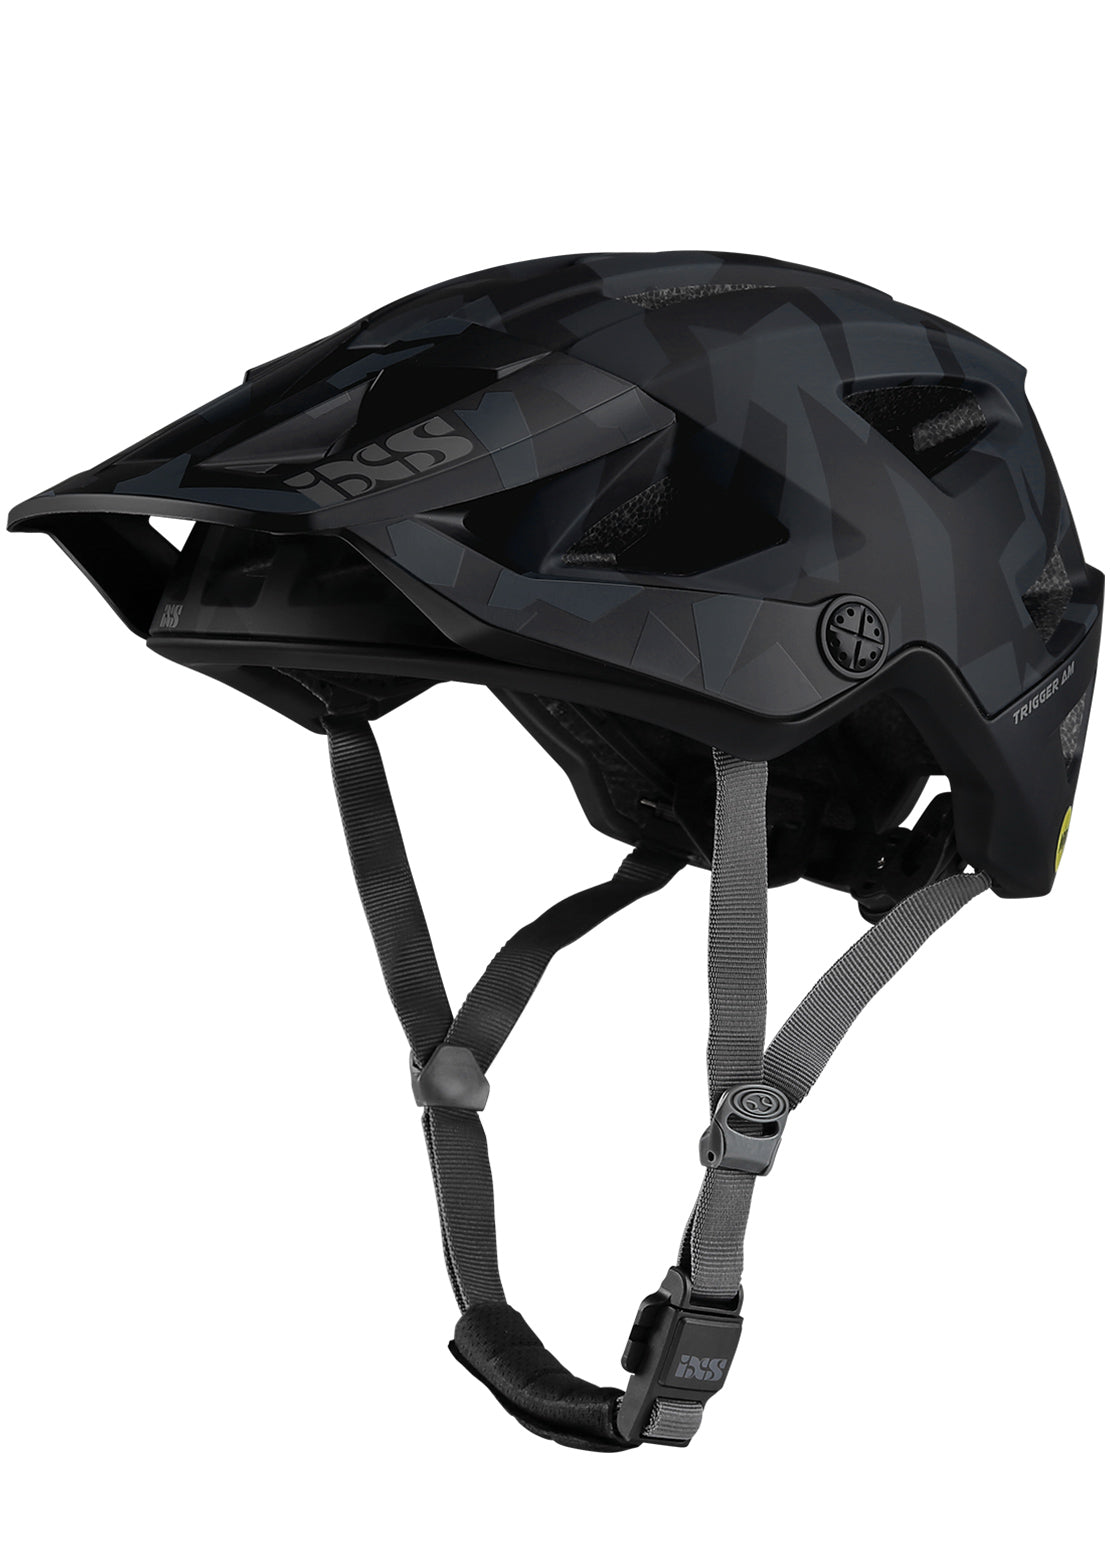 IXS Trigger AM Mips Helmet Camo Black